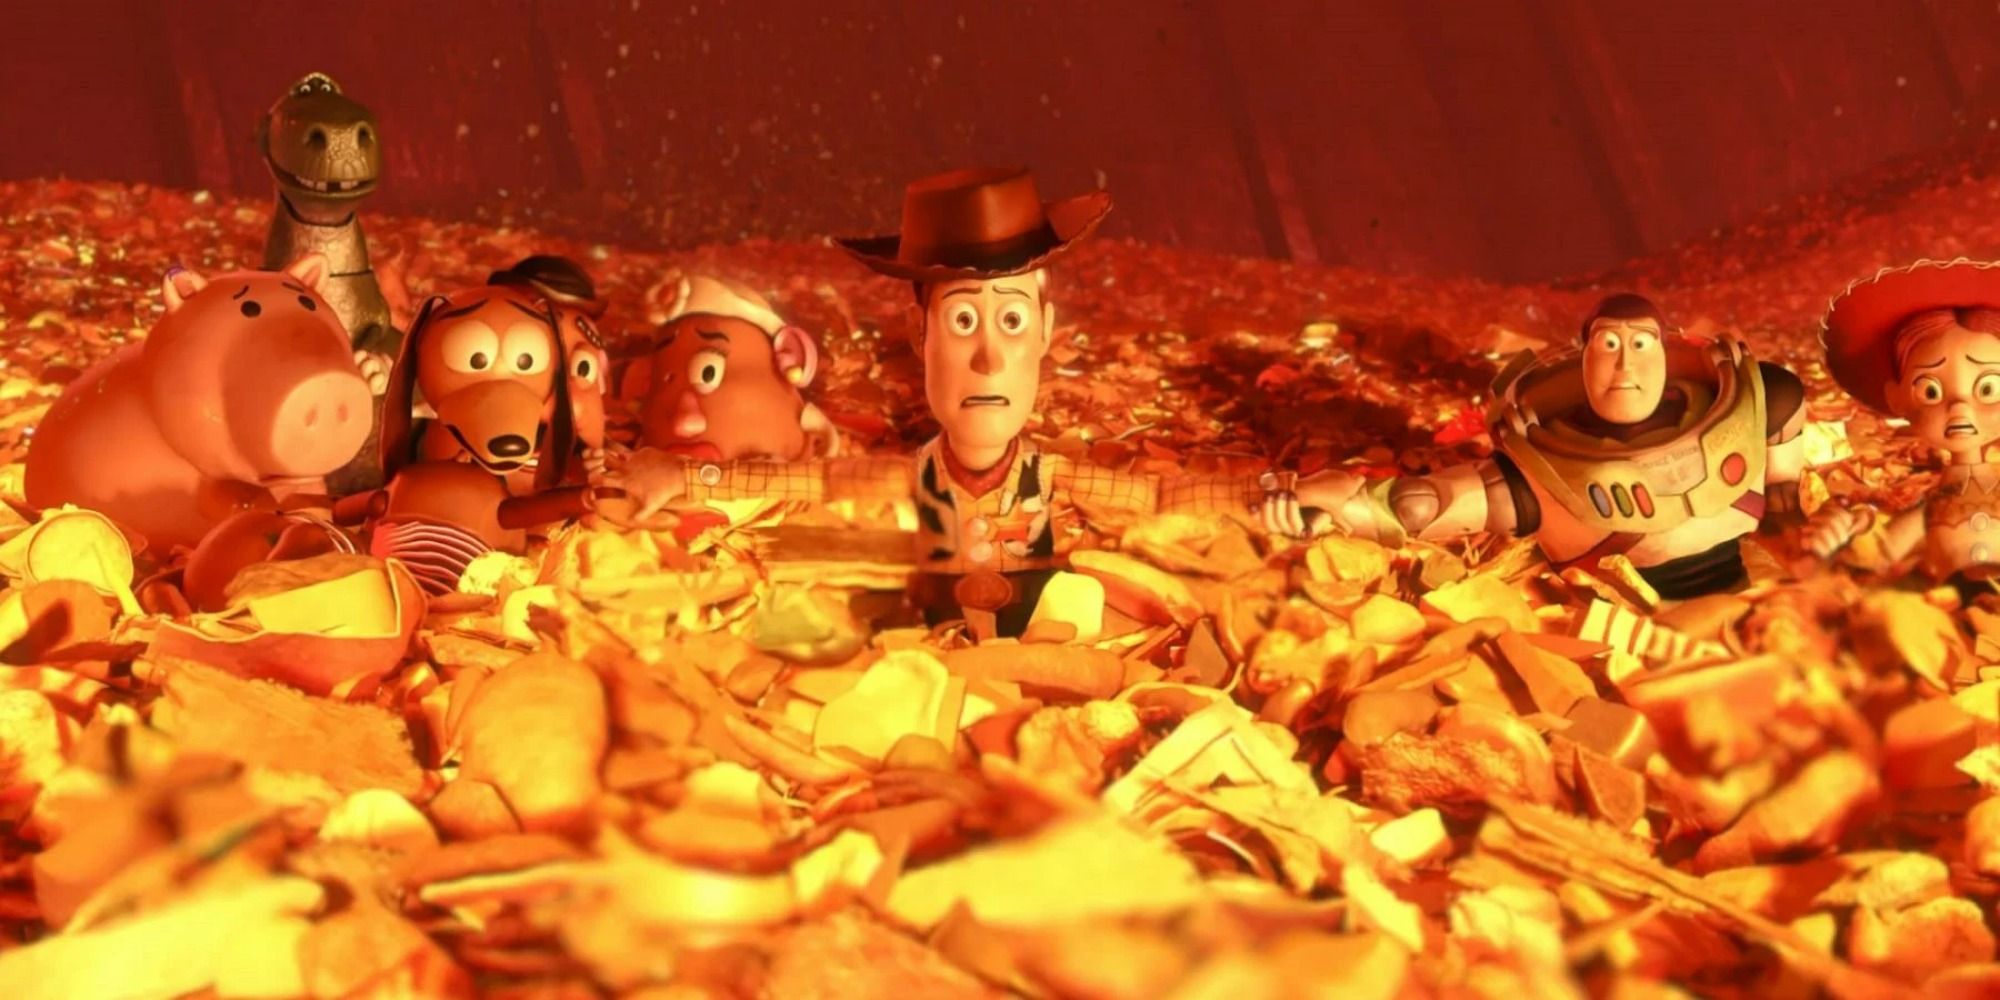 Escena de Toy Story 3 con Woody con la voz de Tom Hanks y Buzz Lightyear con la voz de Tim Allen mientras están sentados en la basura a punto de ser incinerados.